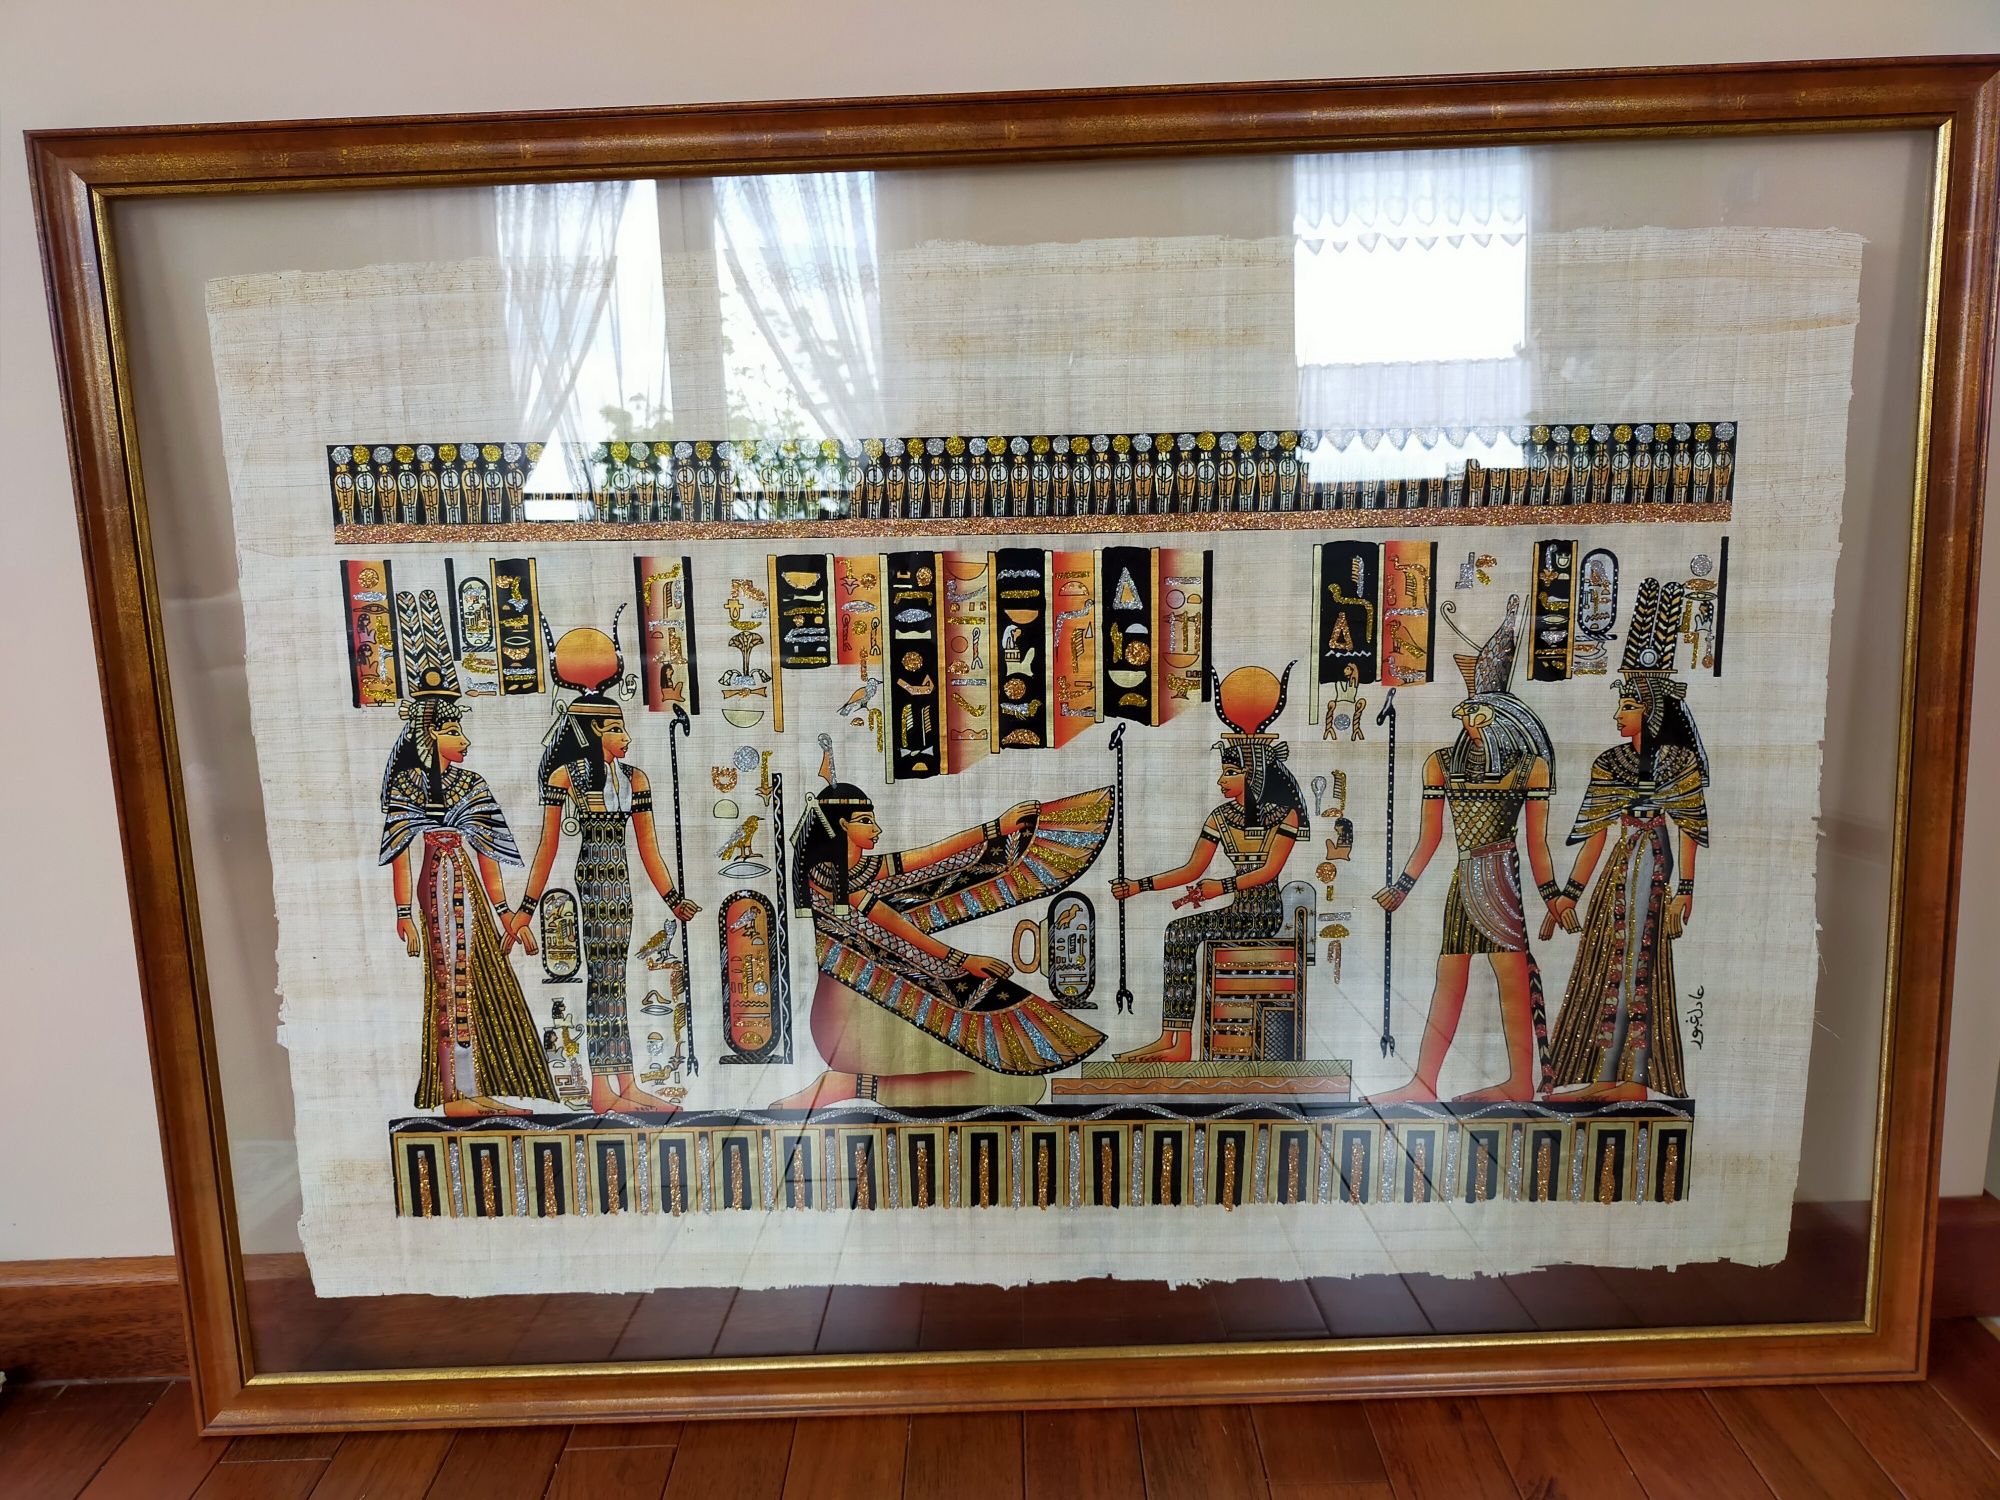 Papirus egipski za szkłem w ramie.